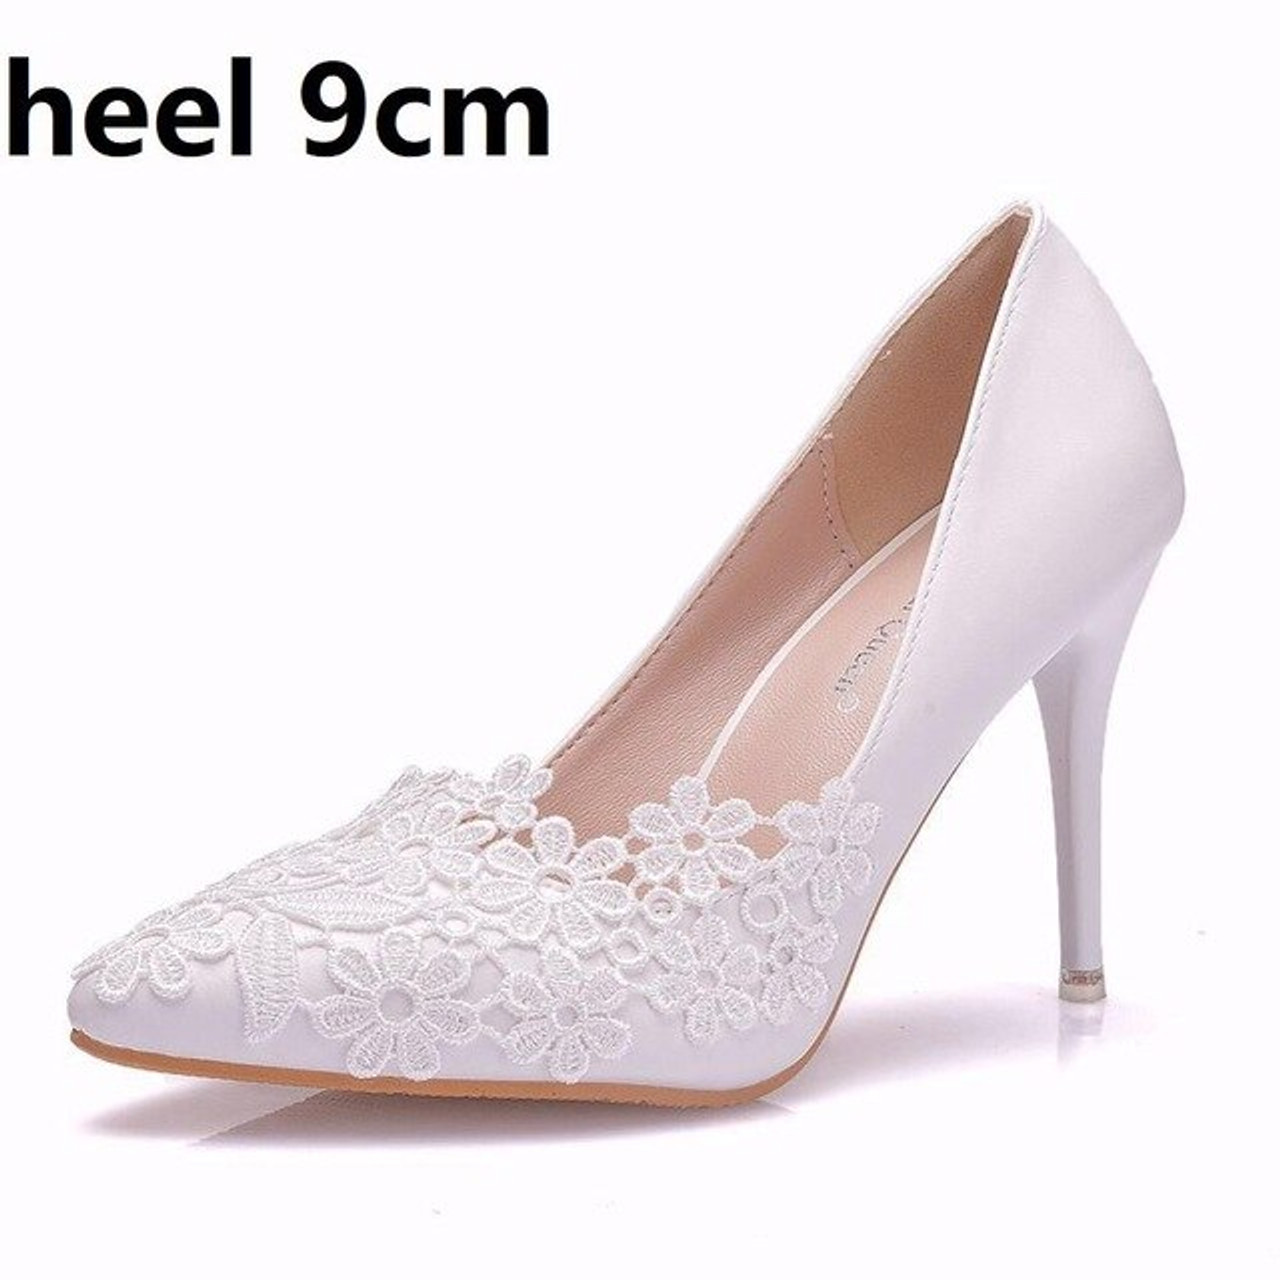 rille Lav en seng Afsky Crystal Queen White Lace Flower Pumps womens Elegant Wedding Shoes Bride  High Heels Platform Ladies Wedges Party Dress Shoes|Women's Pumps| -  estockyard